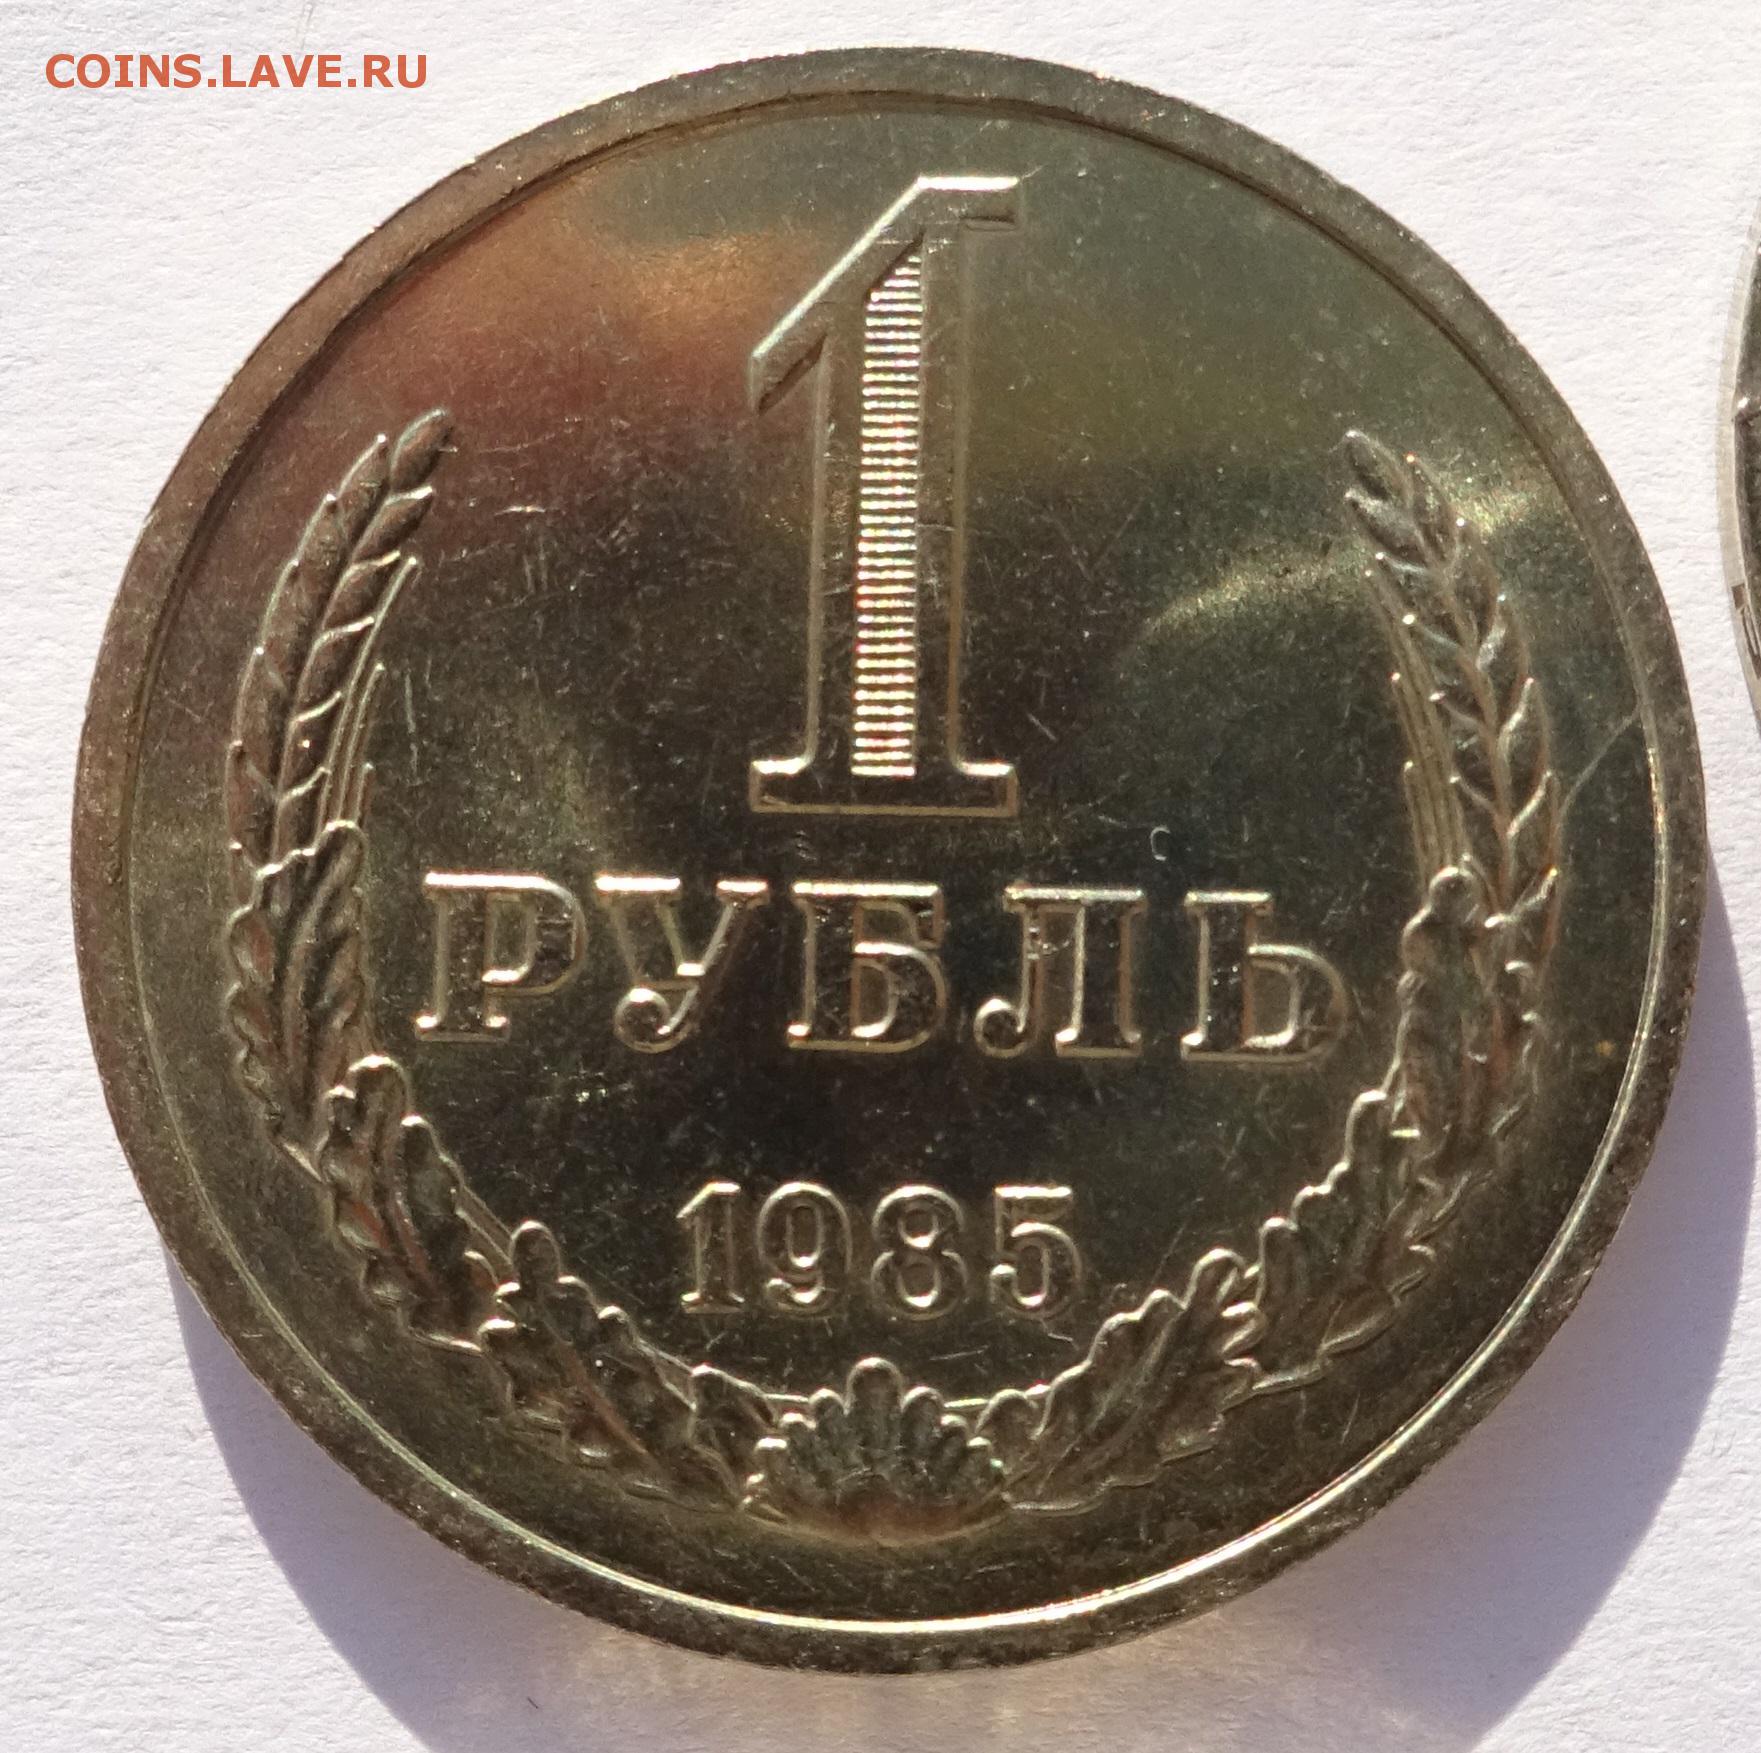 67 в рублях. Рубли годовые?. 67 Рублей. Купить рубль 1981 год. Годовой.